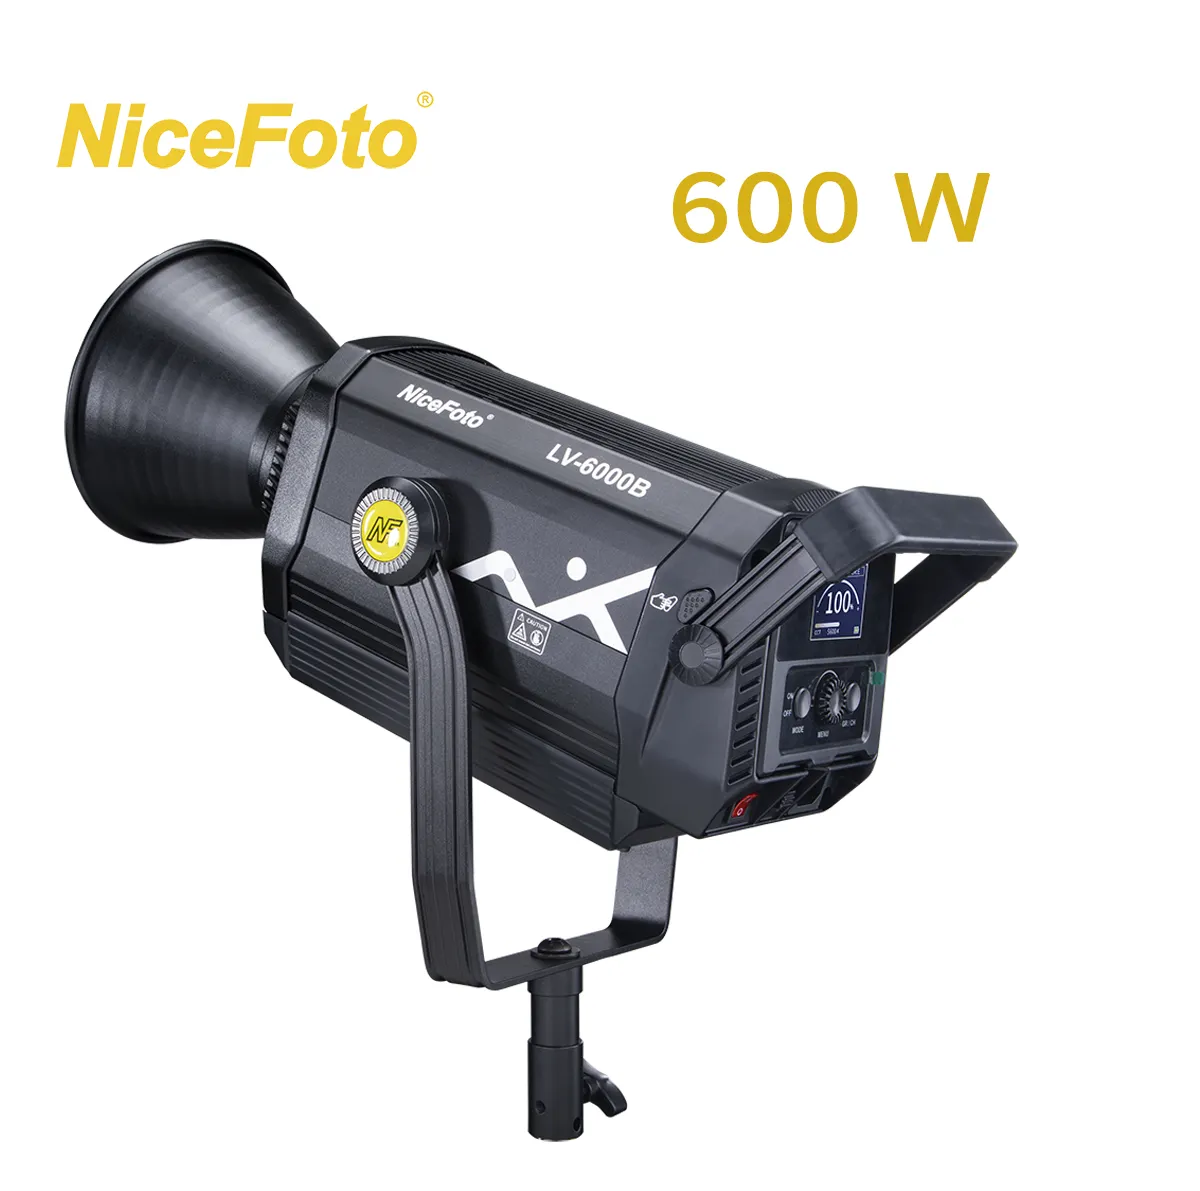 Nicefoto equipamento de iluminação para estúdio, equipamento fotográfico com luz led contínua profissional de 600w para filmagem